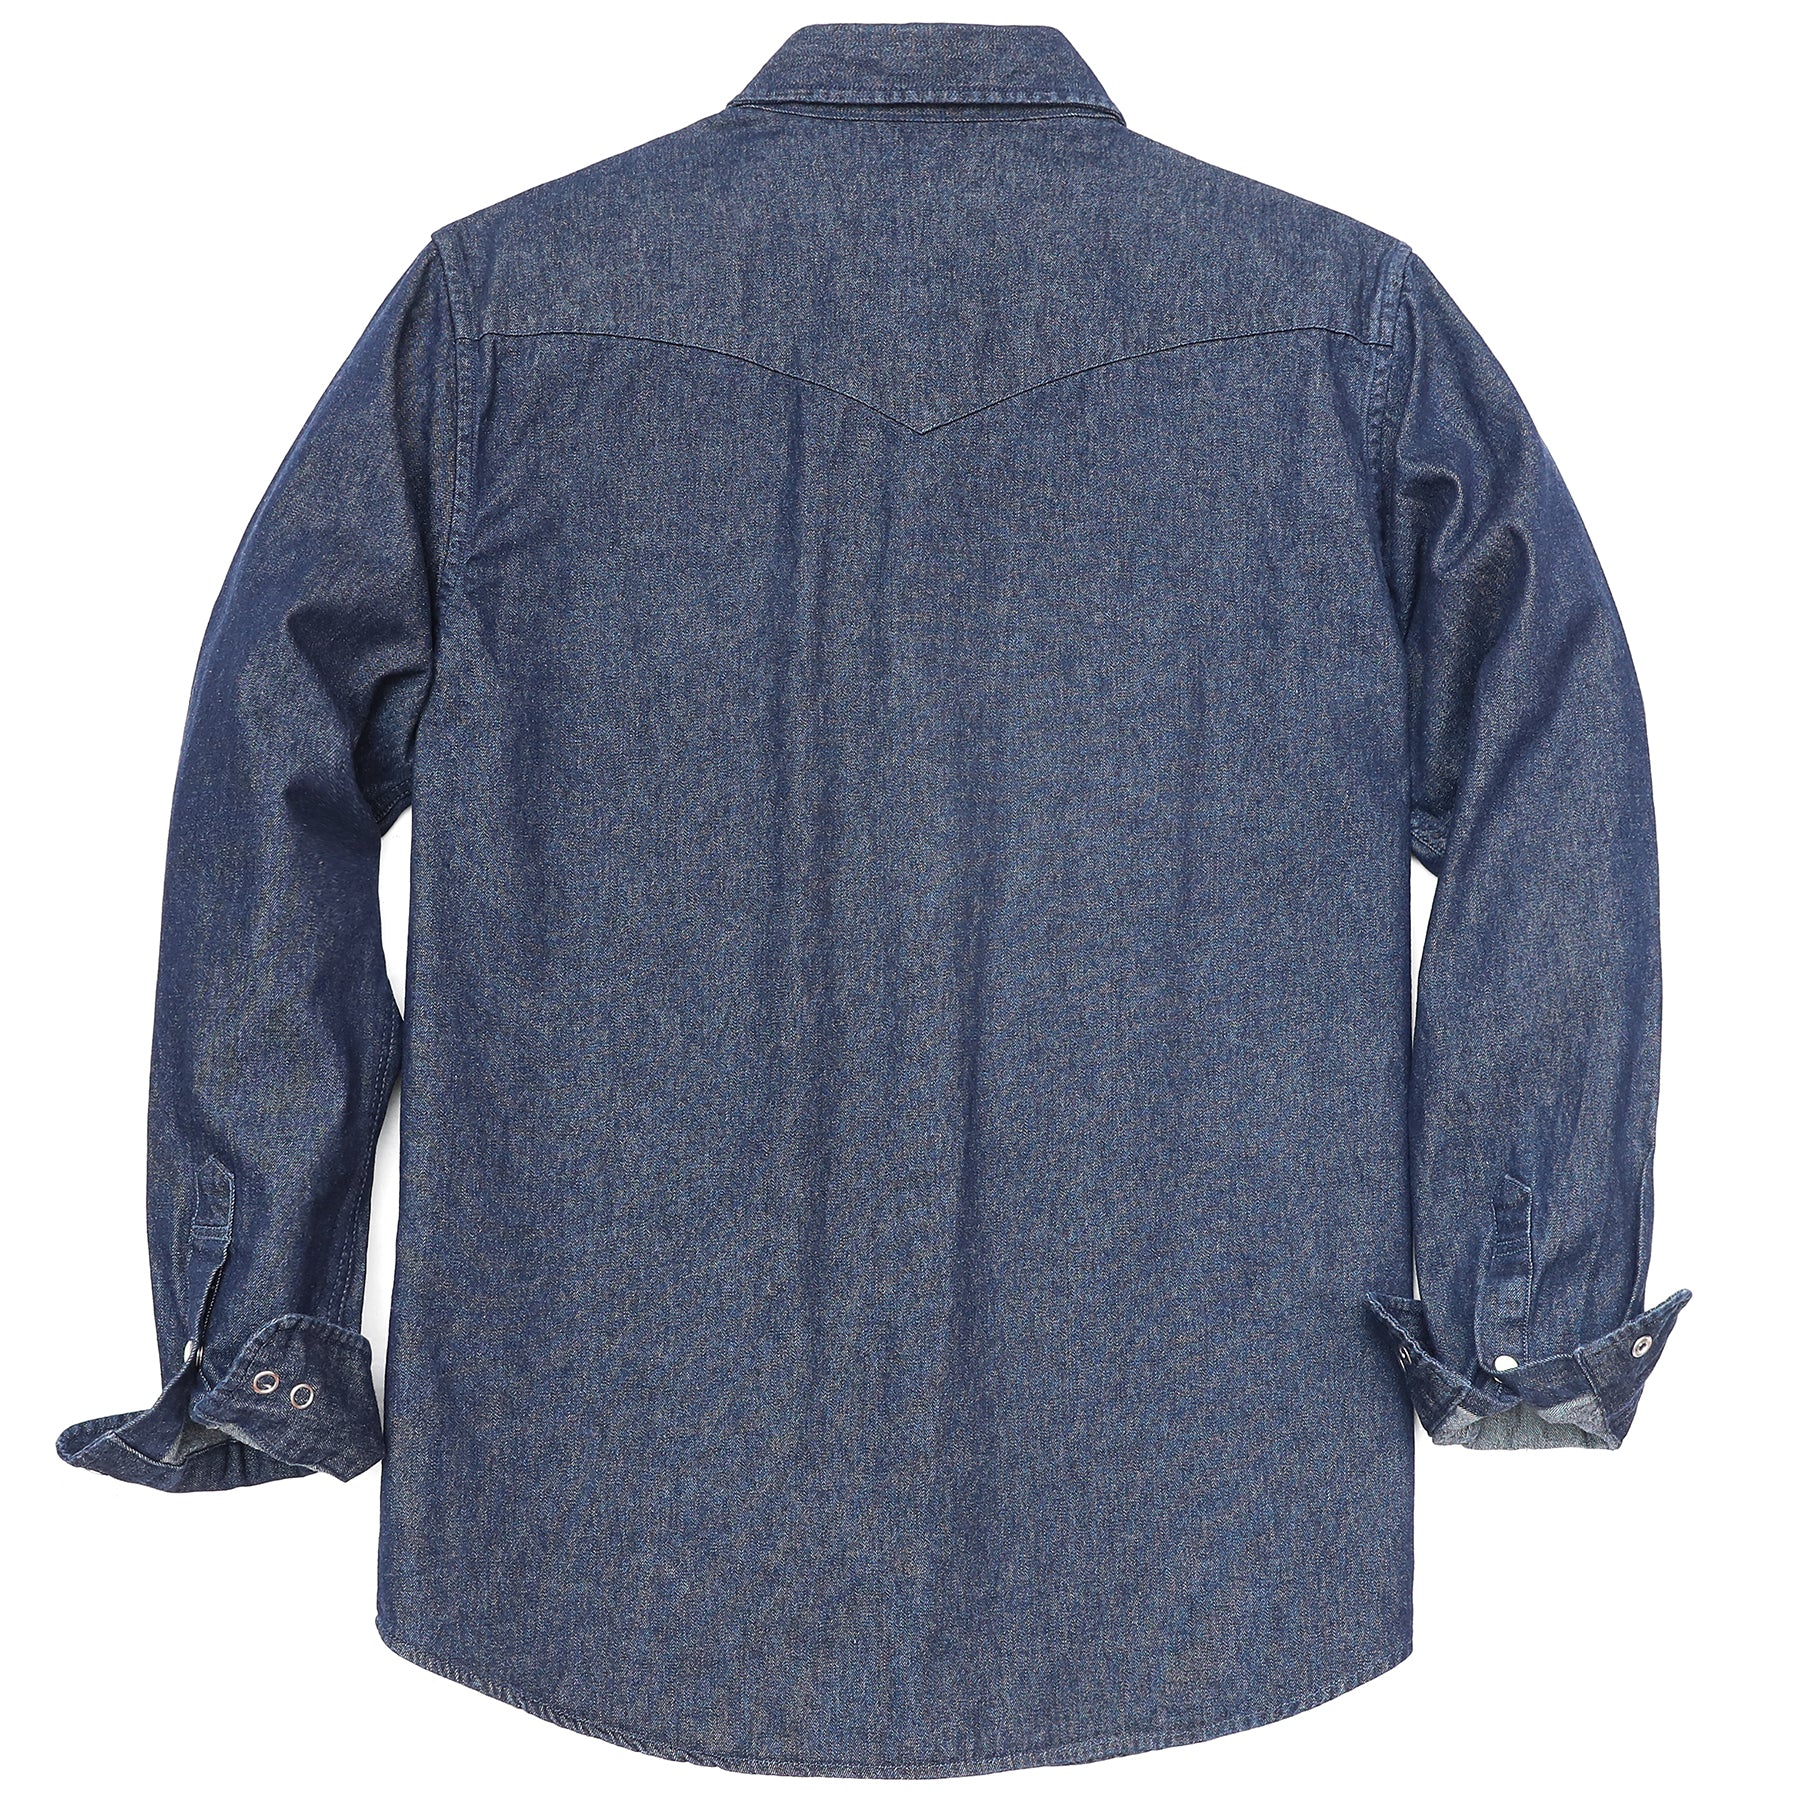 Men's cotton long sleeve denim shirt #4602